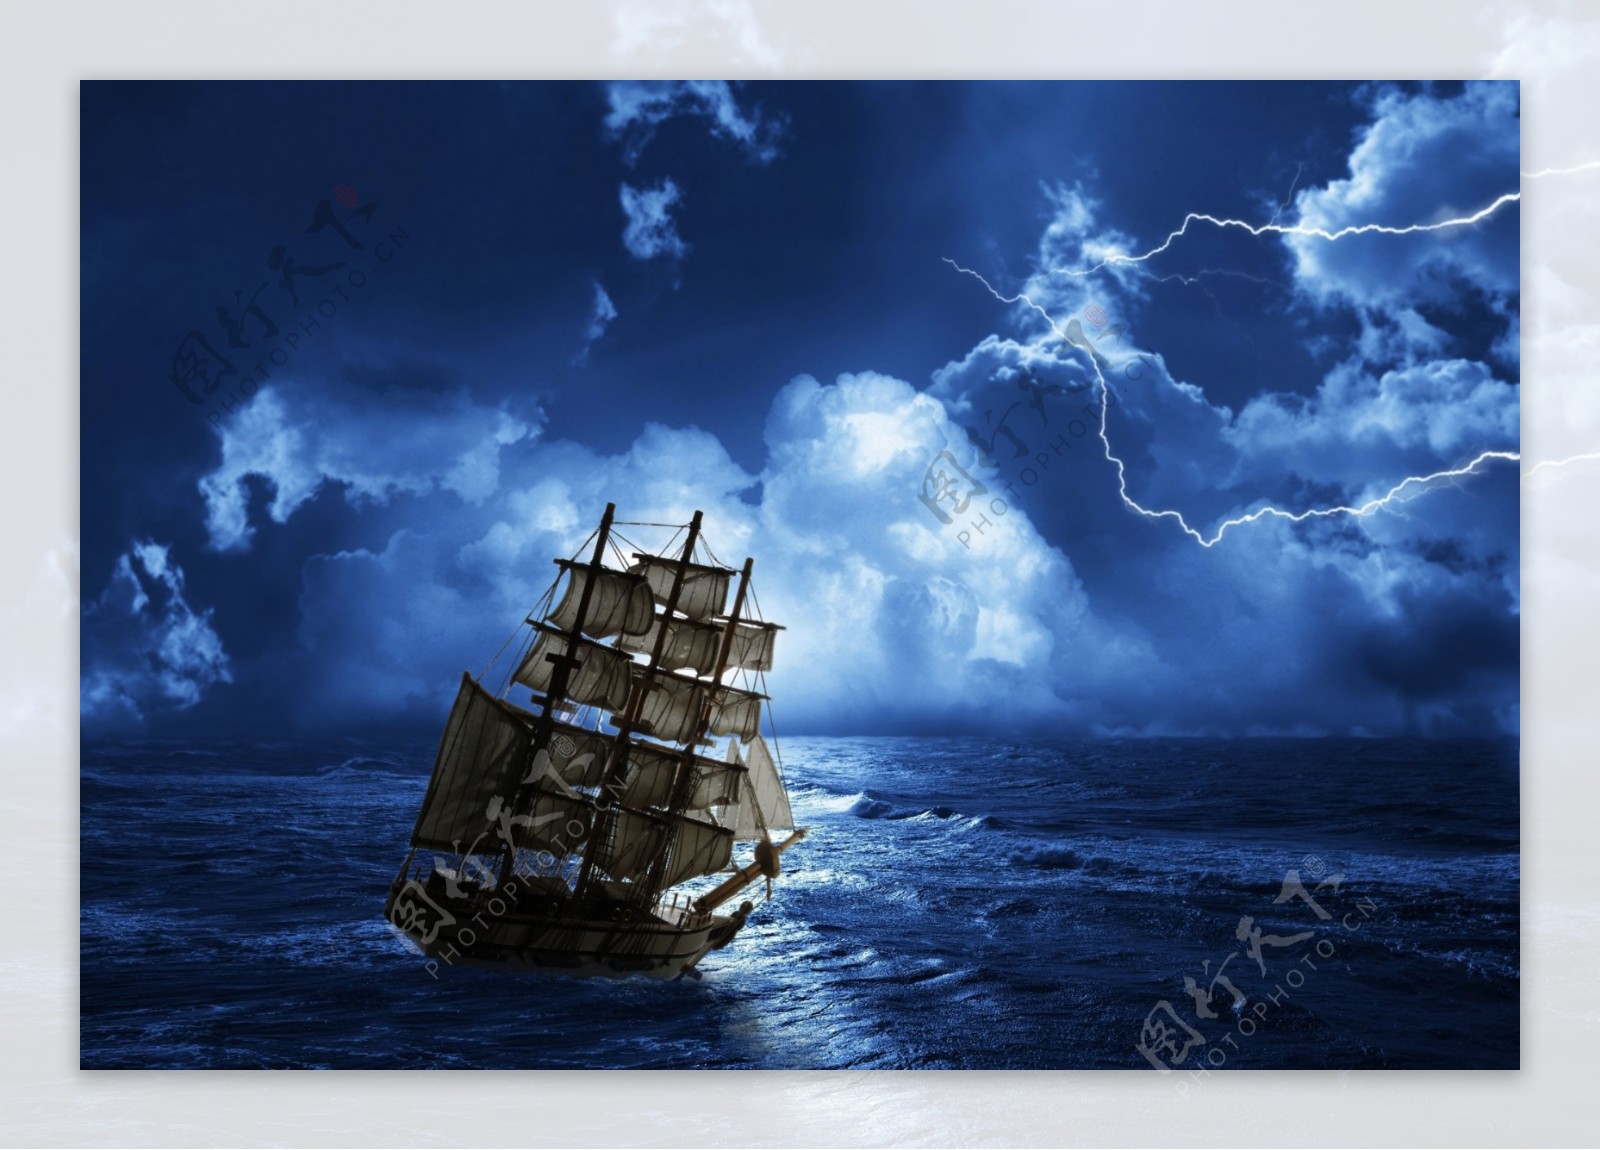 狂风暴雨中航行的帆船摄影图片